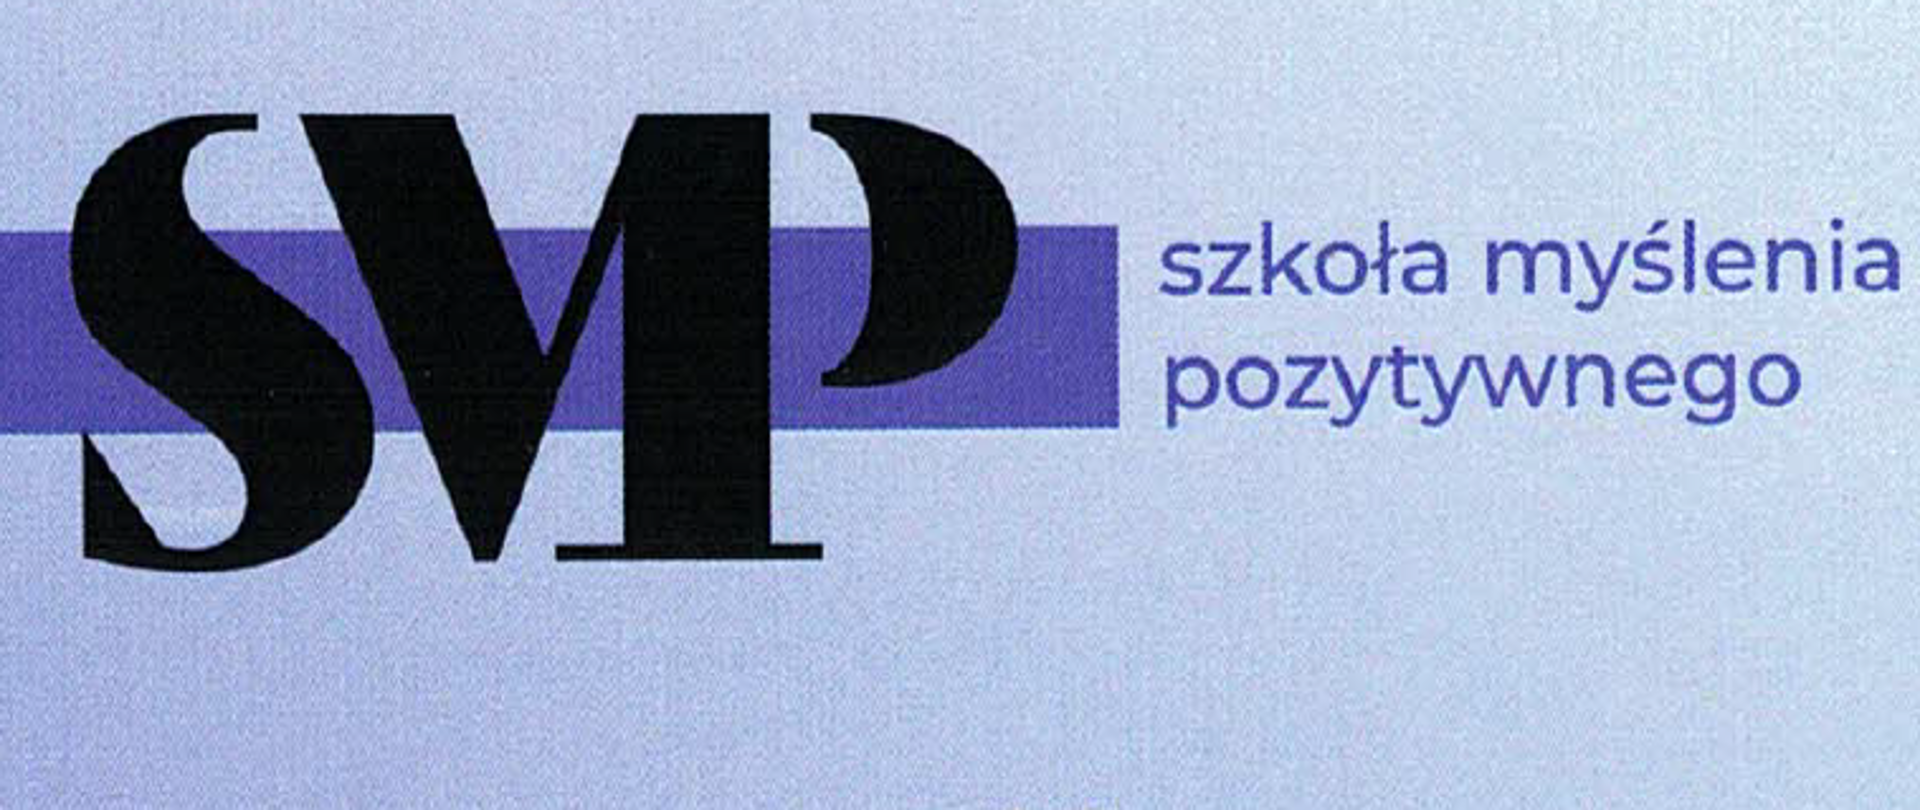 Czarne litery SMP na niebieskim tle oraz logo Fundacja/Instytut Edukacji Pozytywnej